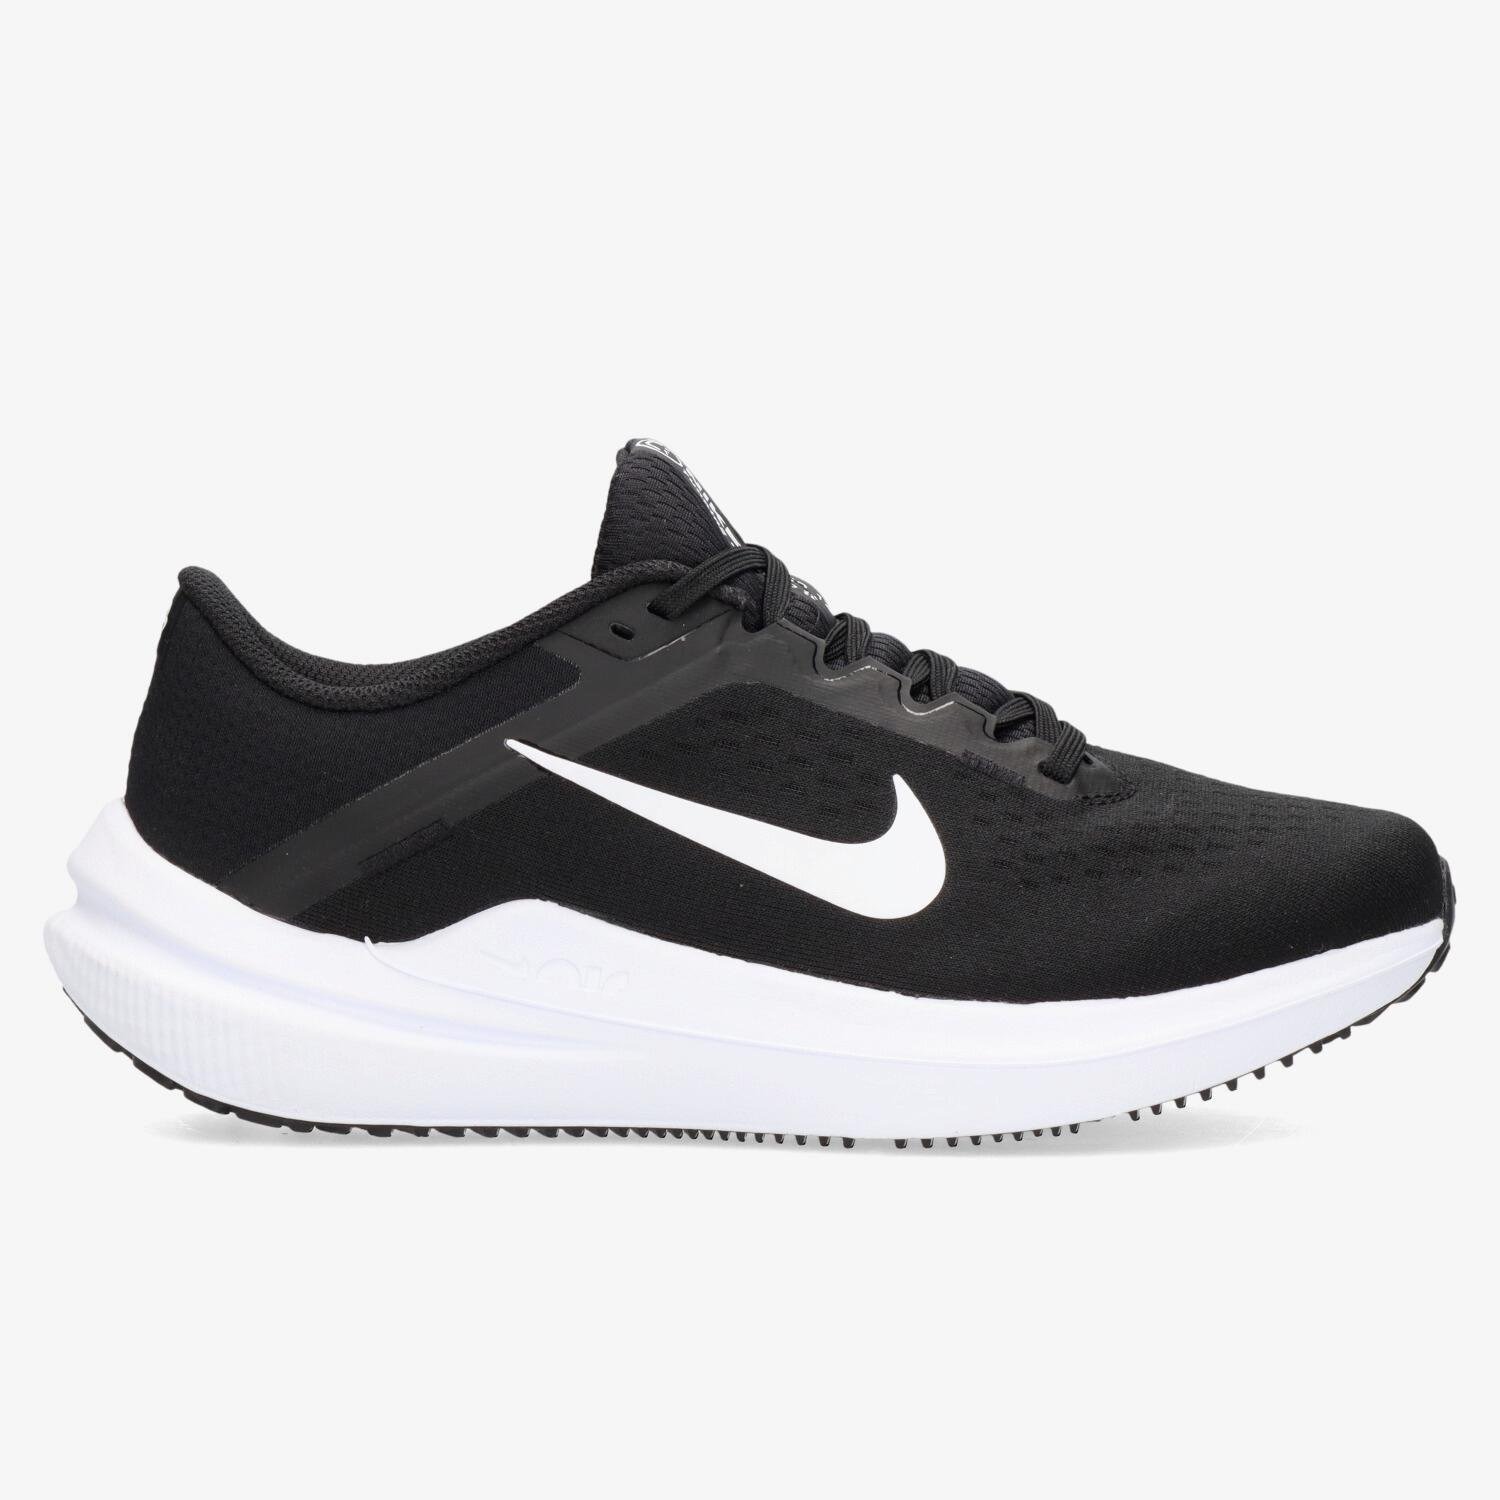 Nike Nike air winflo 10 hardloopschoenen zwart/wit dames dames